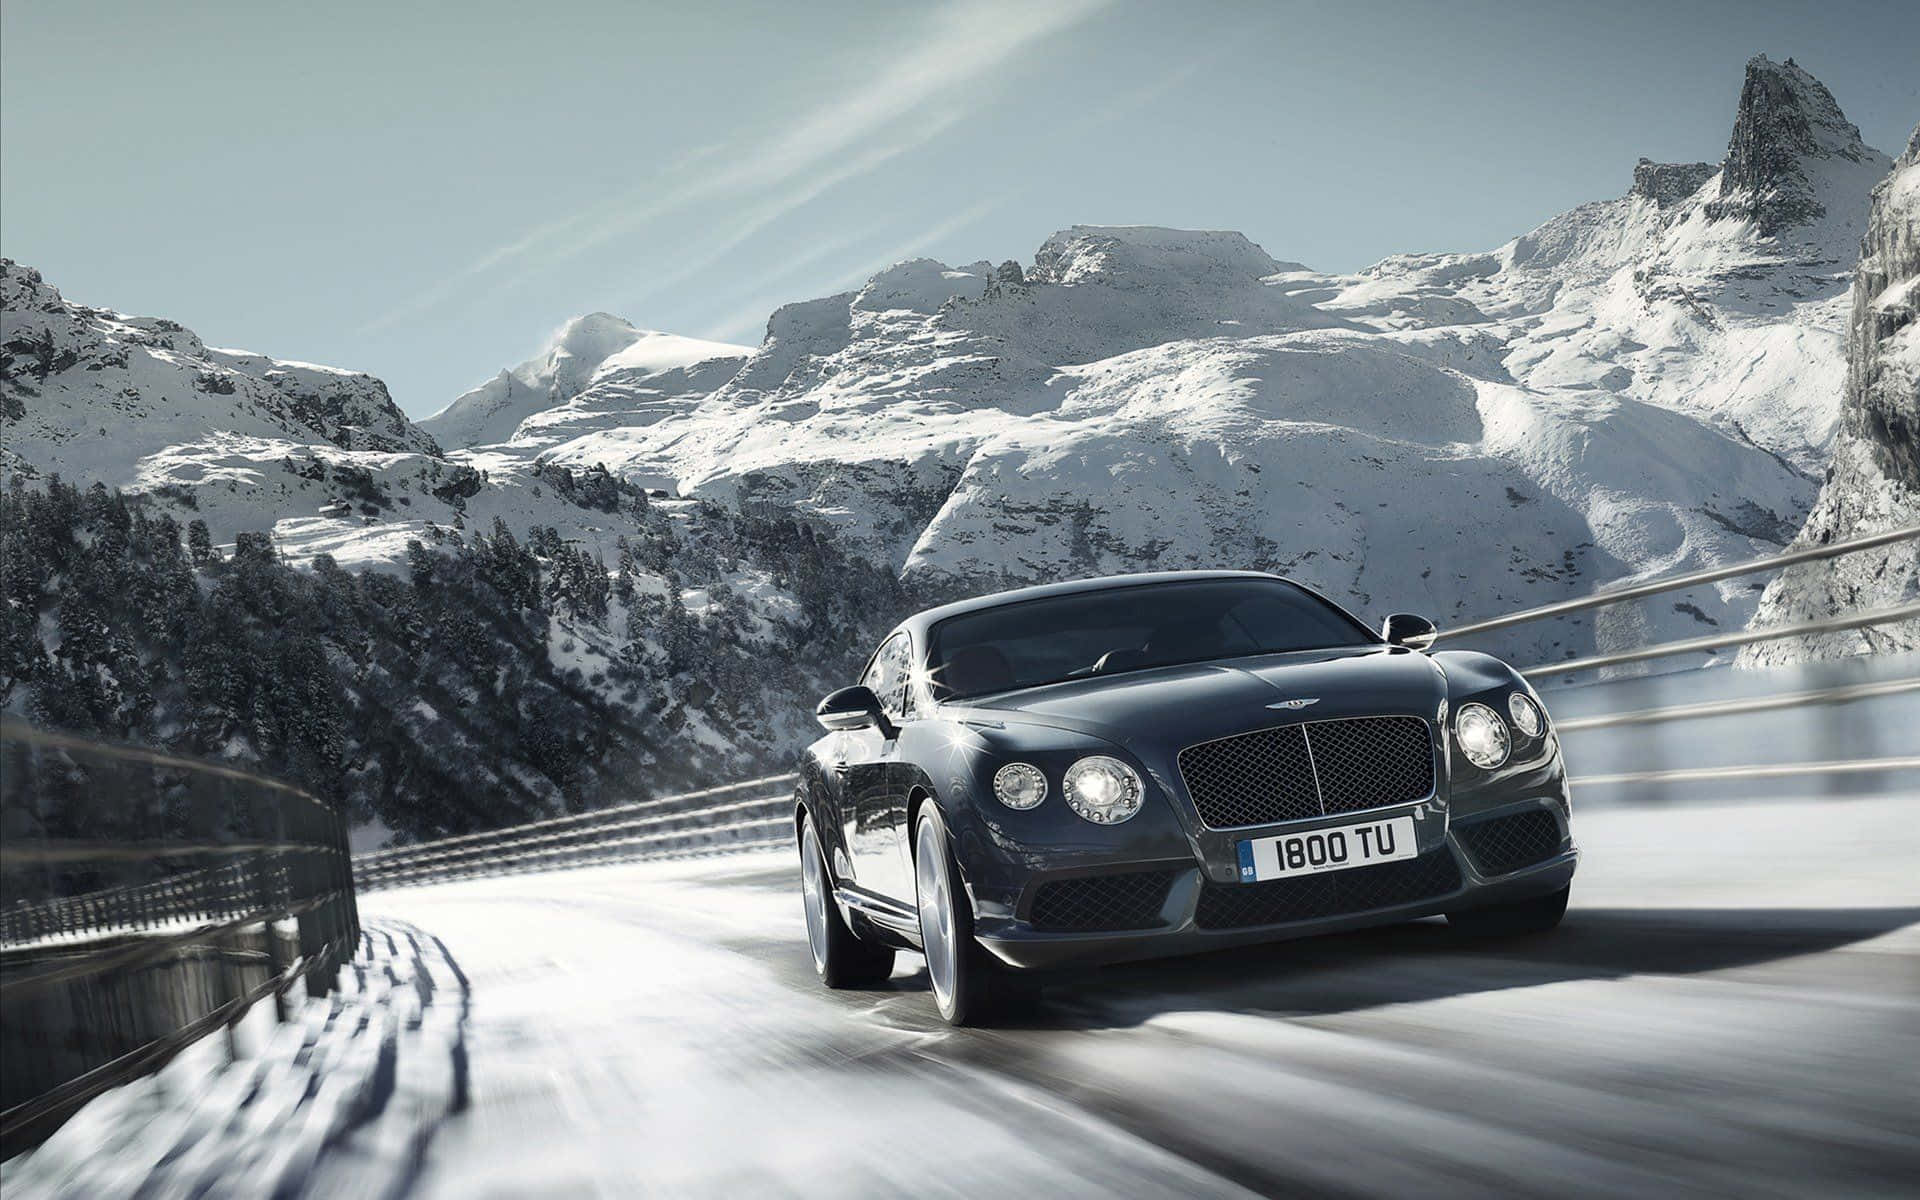 Ellujo Supremo: El Mejor Bentley.